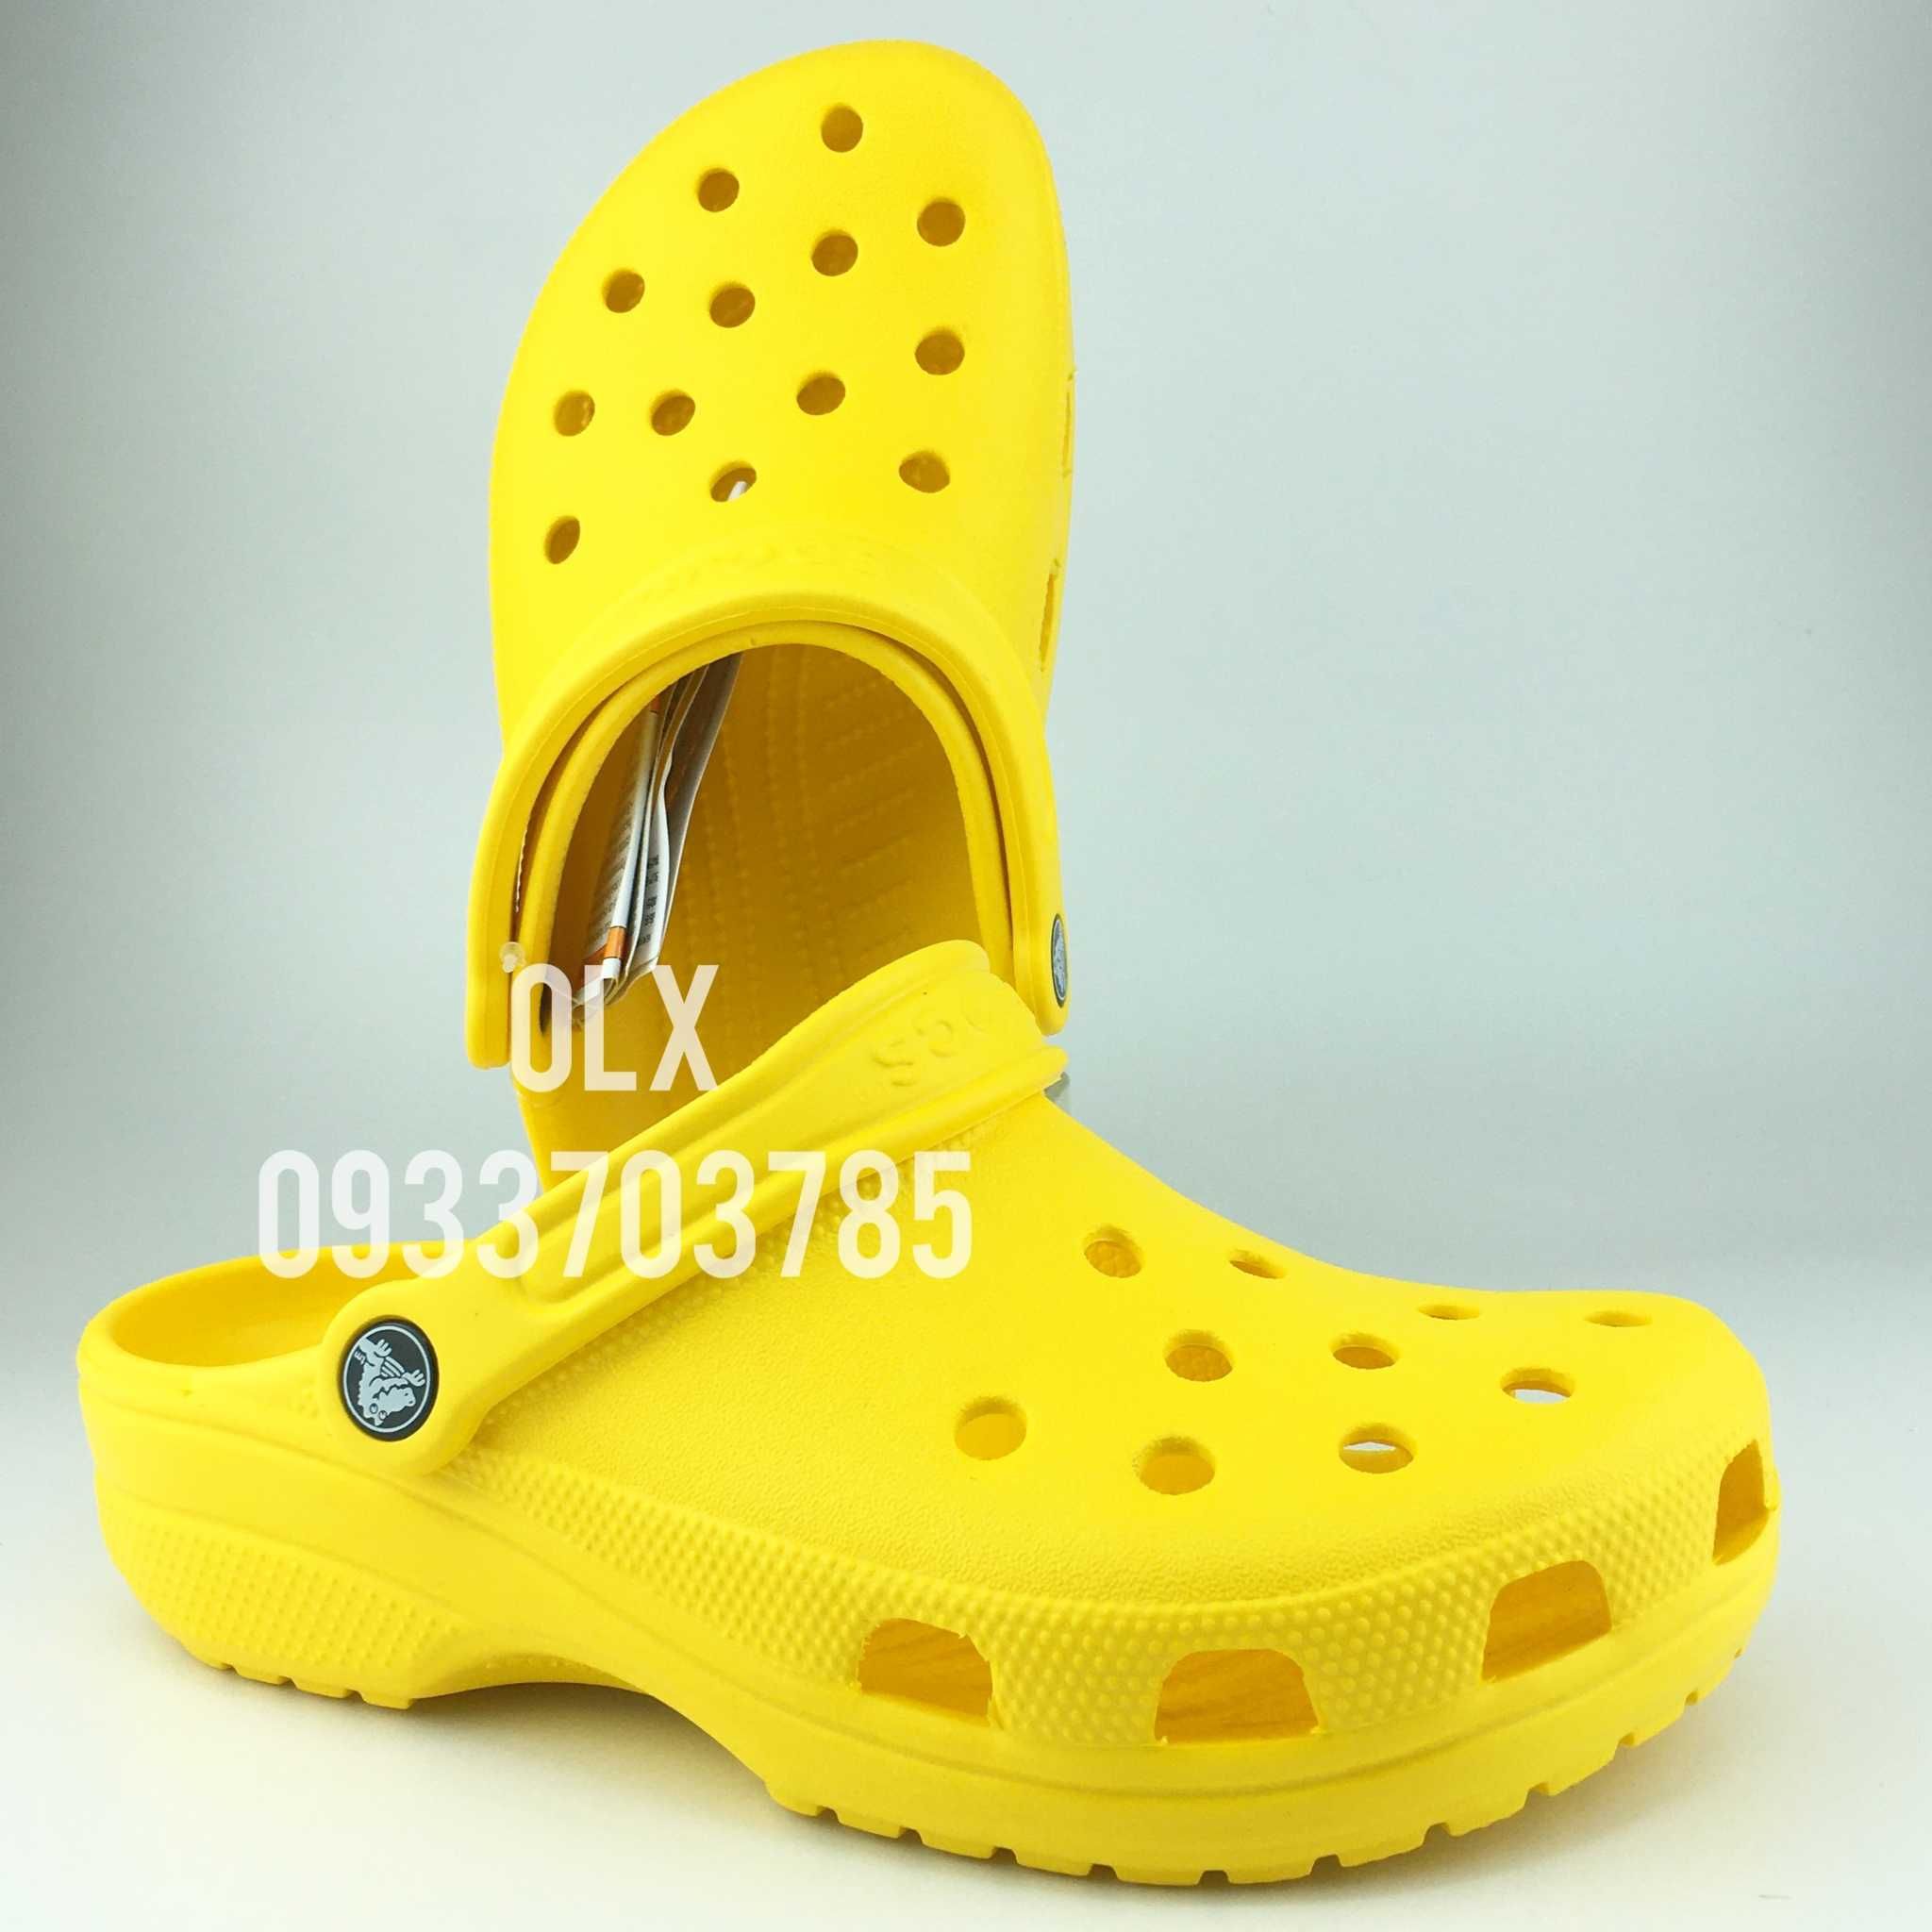 Original Crocs Classic Yellow оригінальні крокс жіночі жовті з знижкою